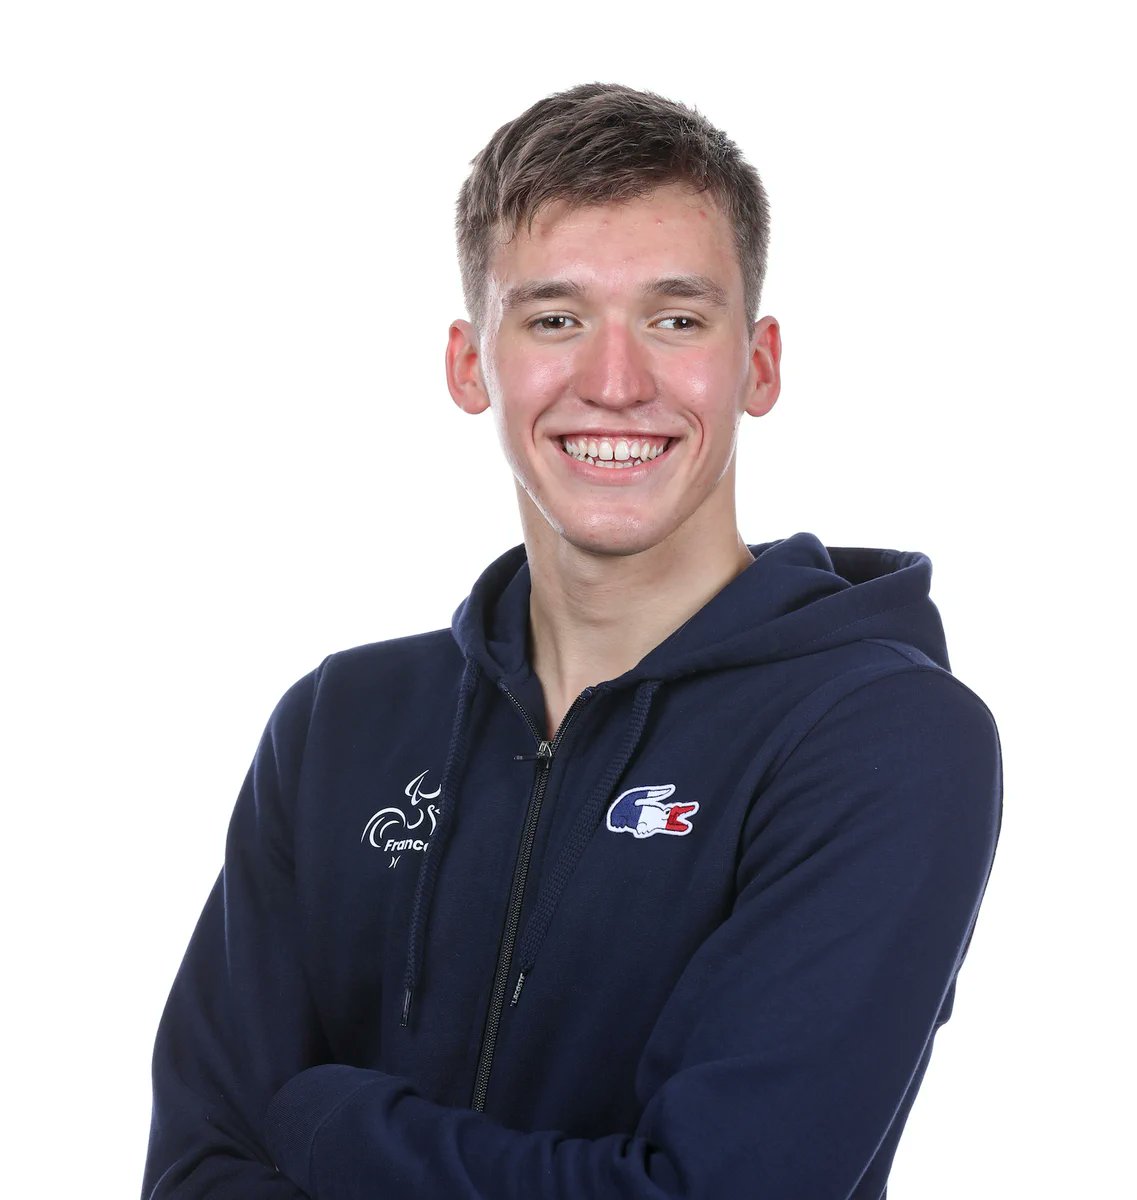 🇫🇷 CHAMPION DU MONDE 🤩 Alex Portal décroche le titre mondial sur le 100m NL S13 des Mondiaux de para-natation à Manchester 🥇 Son second sacre mondial 👏